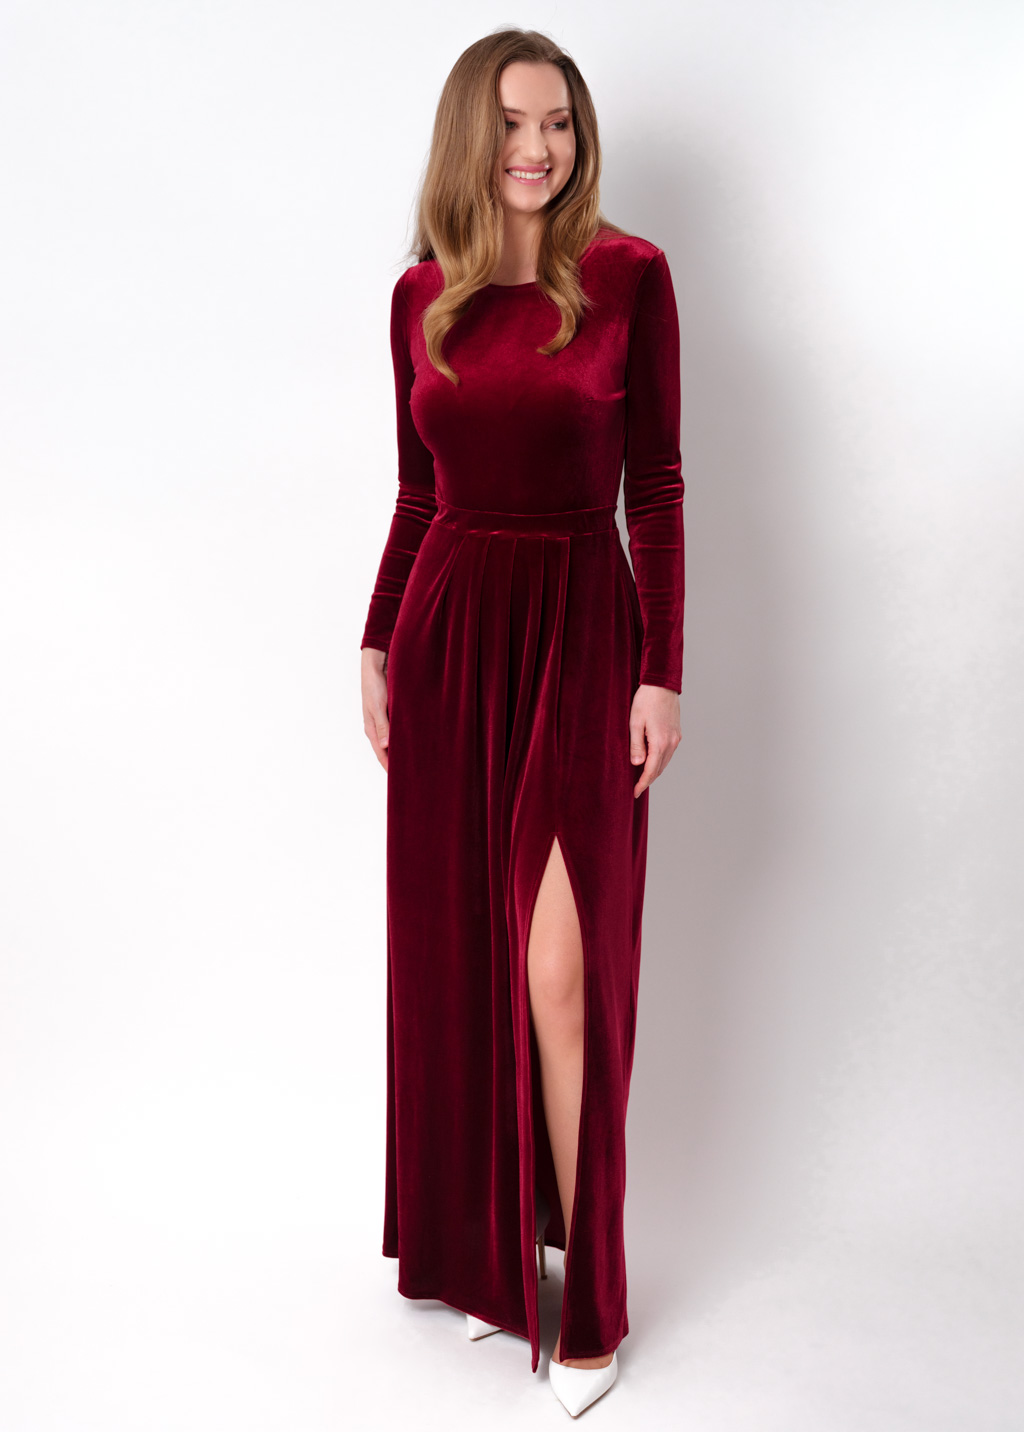 Burgundy velvet slit dress